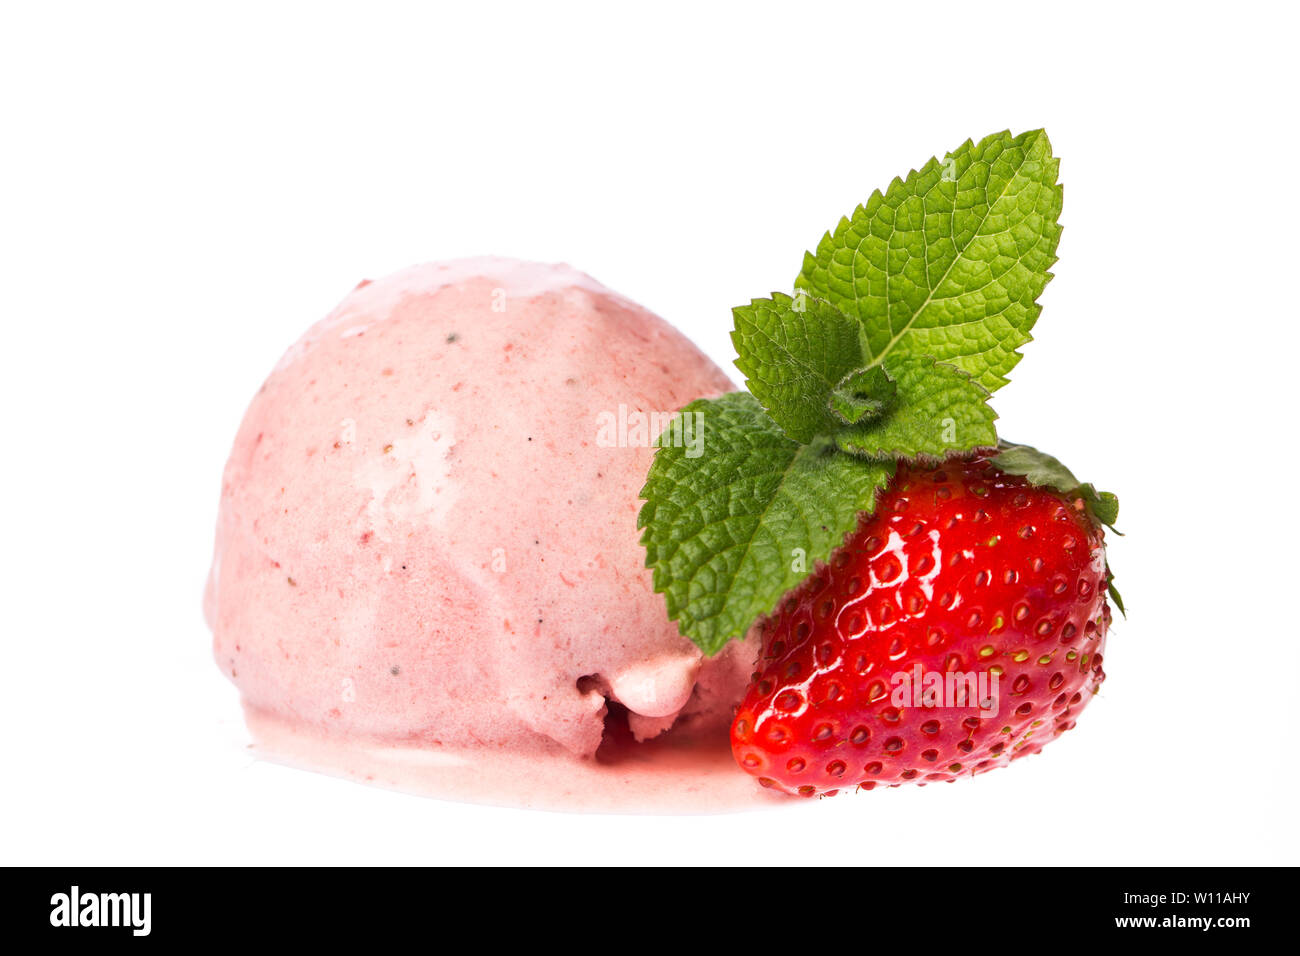 Une boule de glace à la fraise - strawberry et menthe isolé sur fond blanc. Véritable crème glacée comestibles - aucun ingrédient artificiel utilisé Banque D'Images